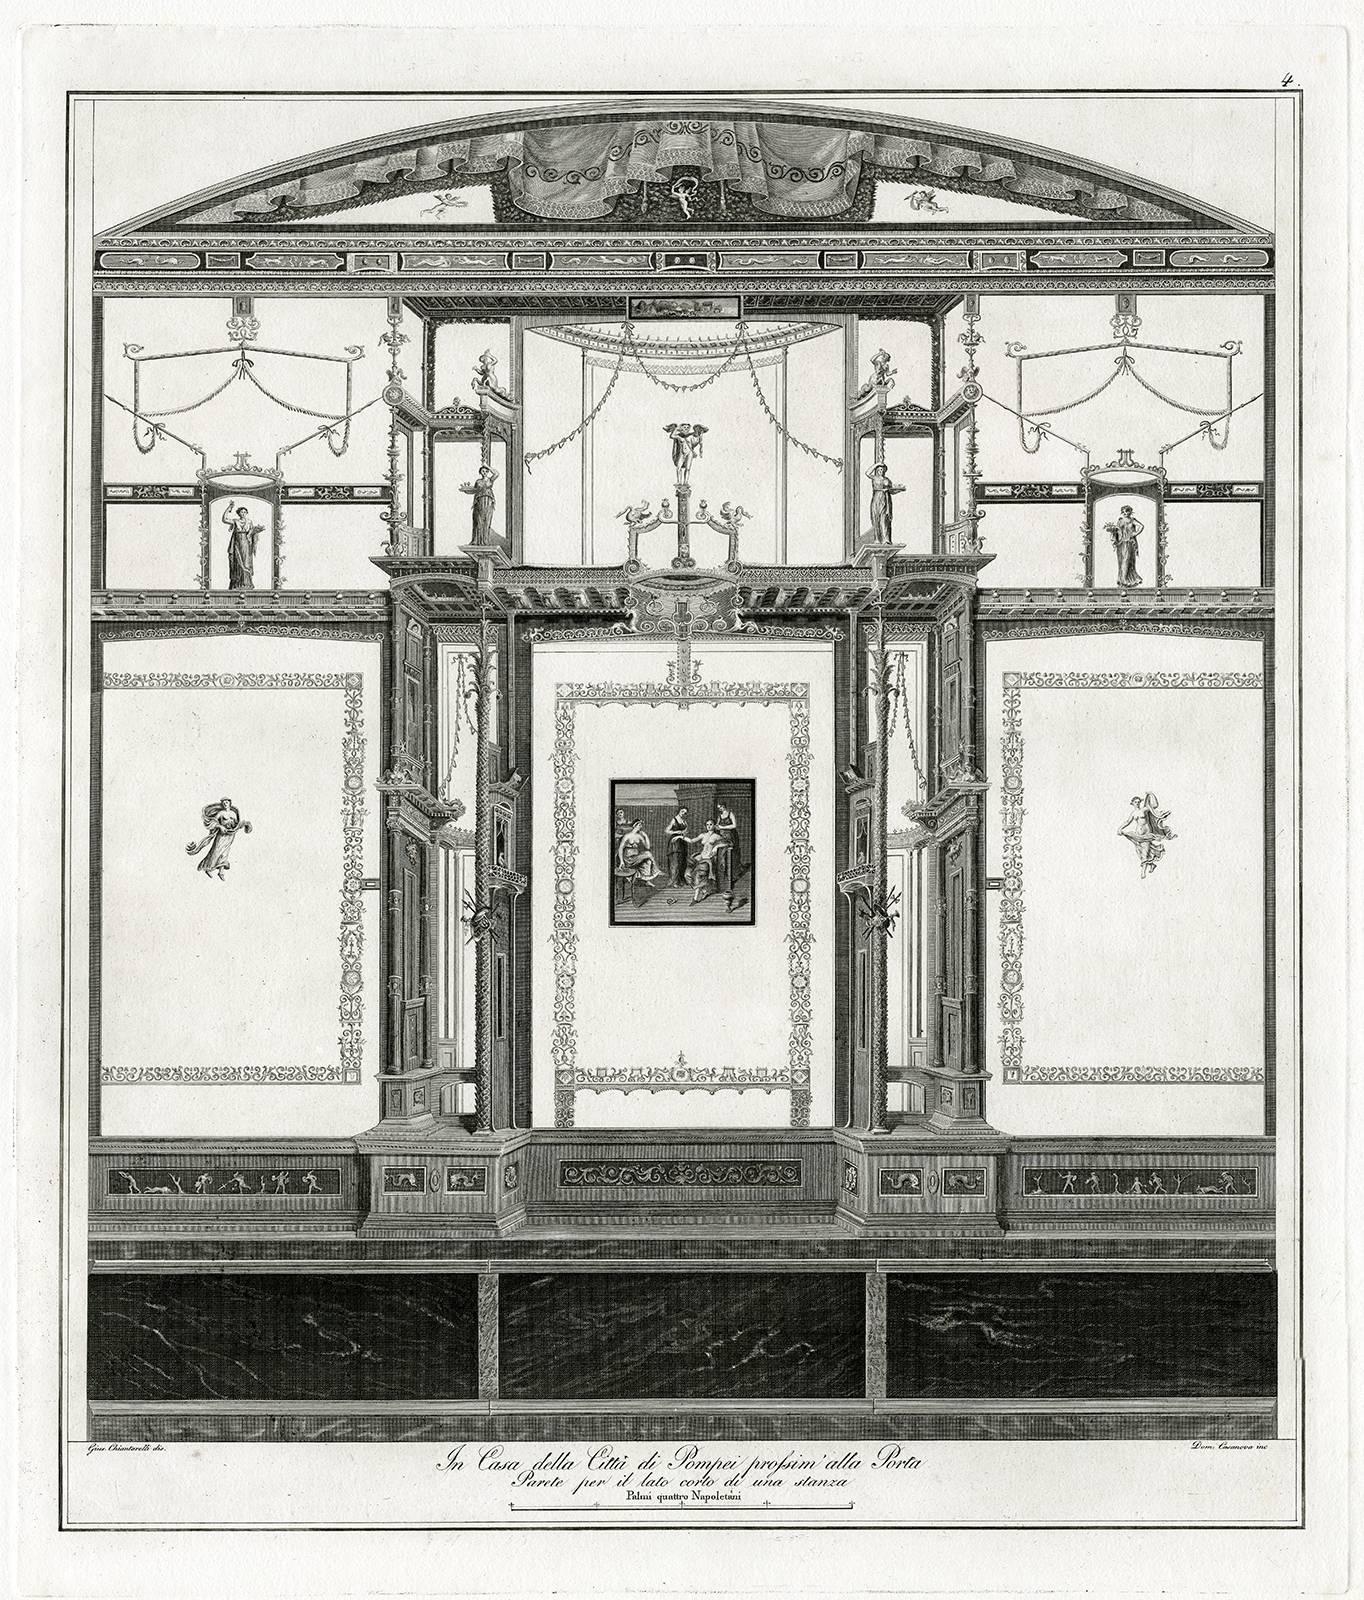 Domingo Casanova Interior Print - In casa della citta di Pompei prossim della porta.